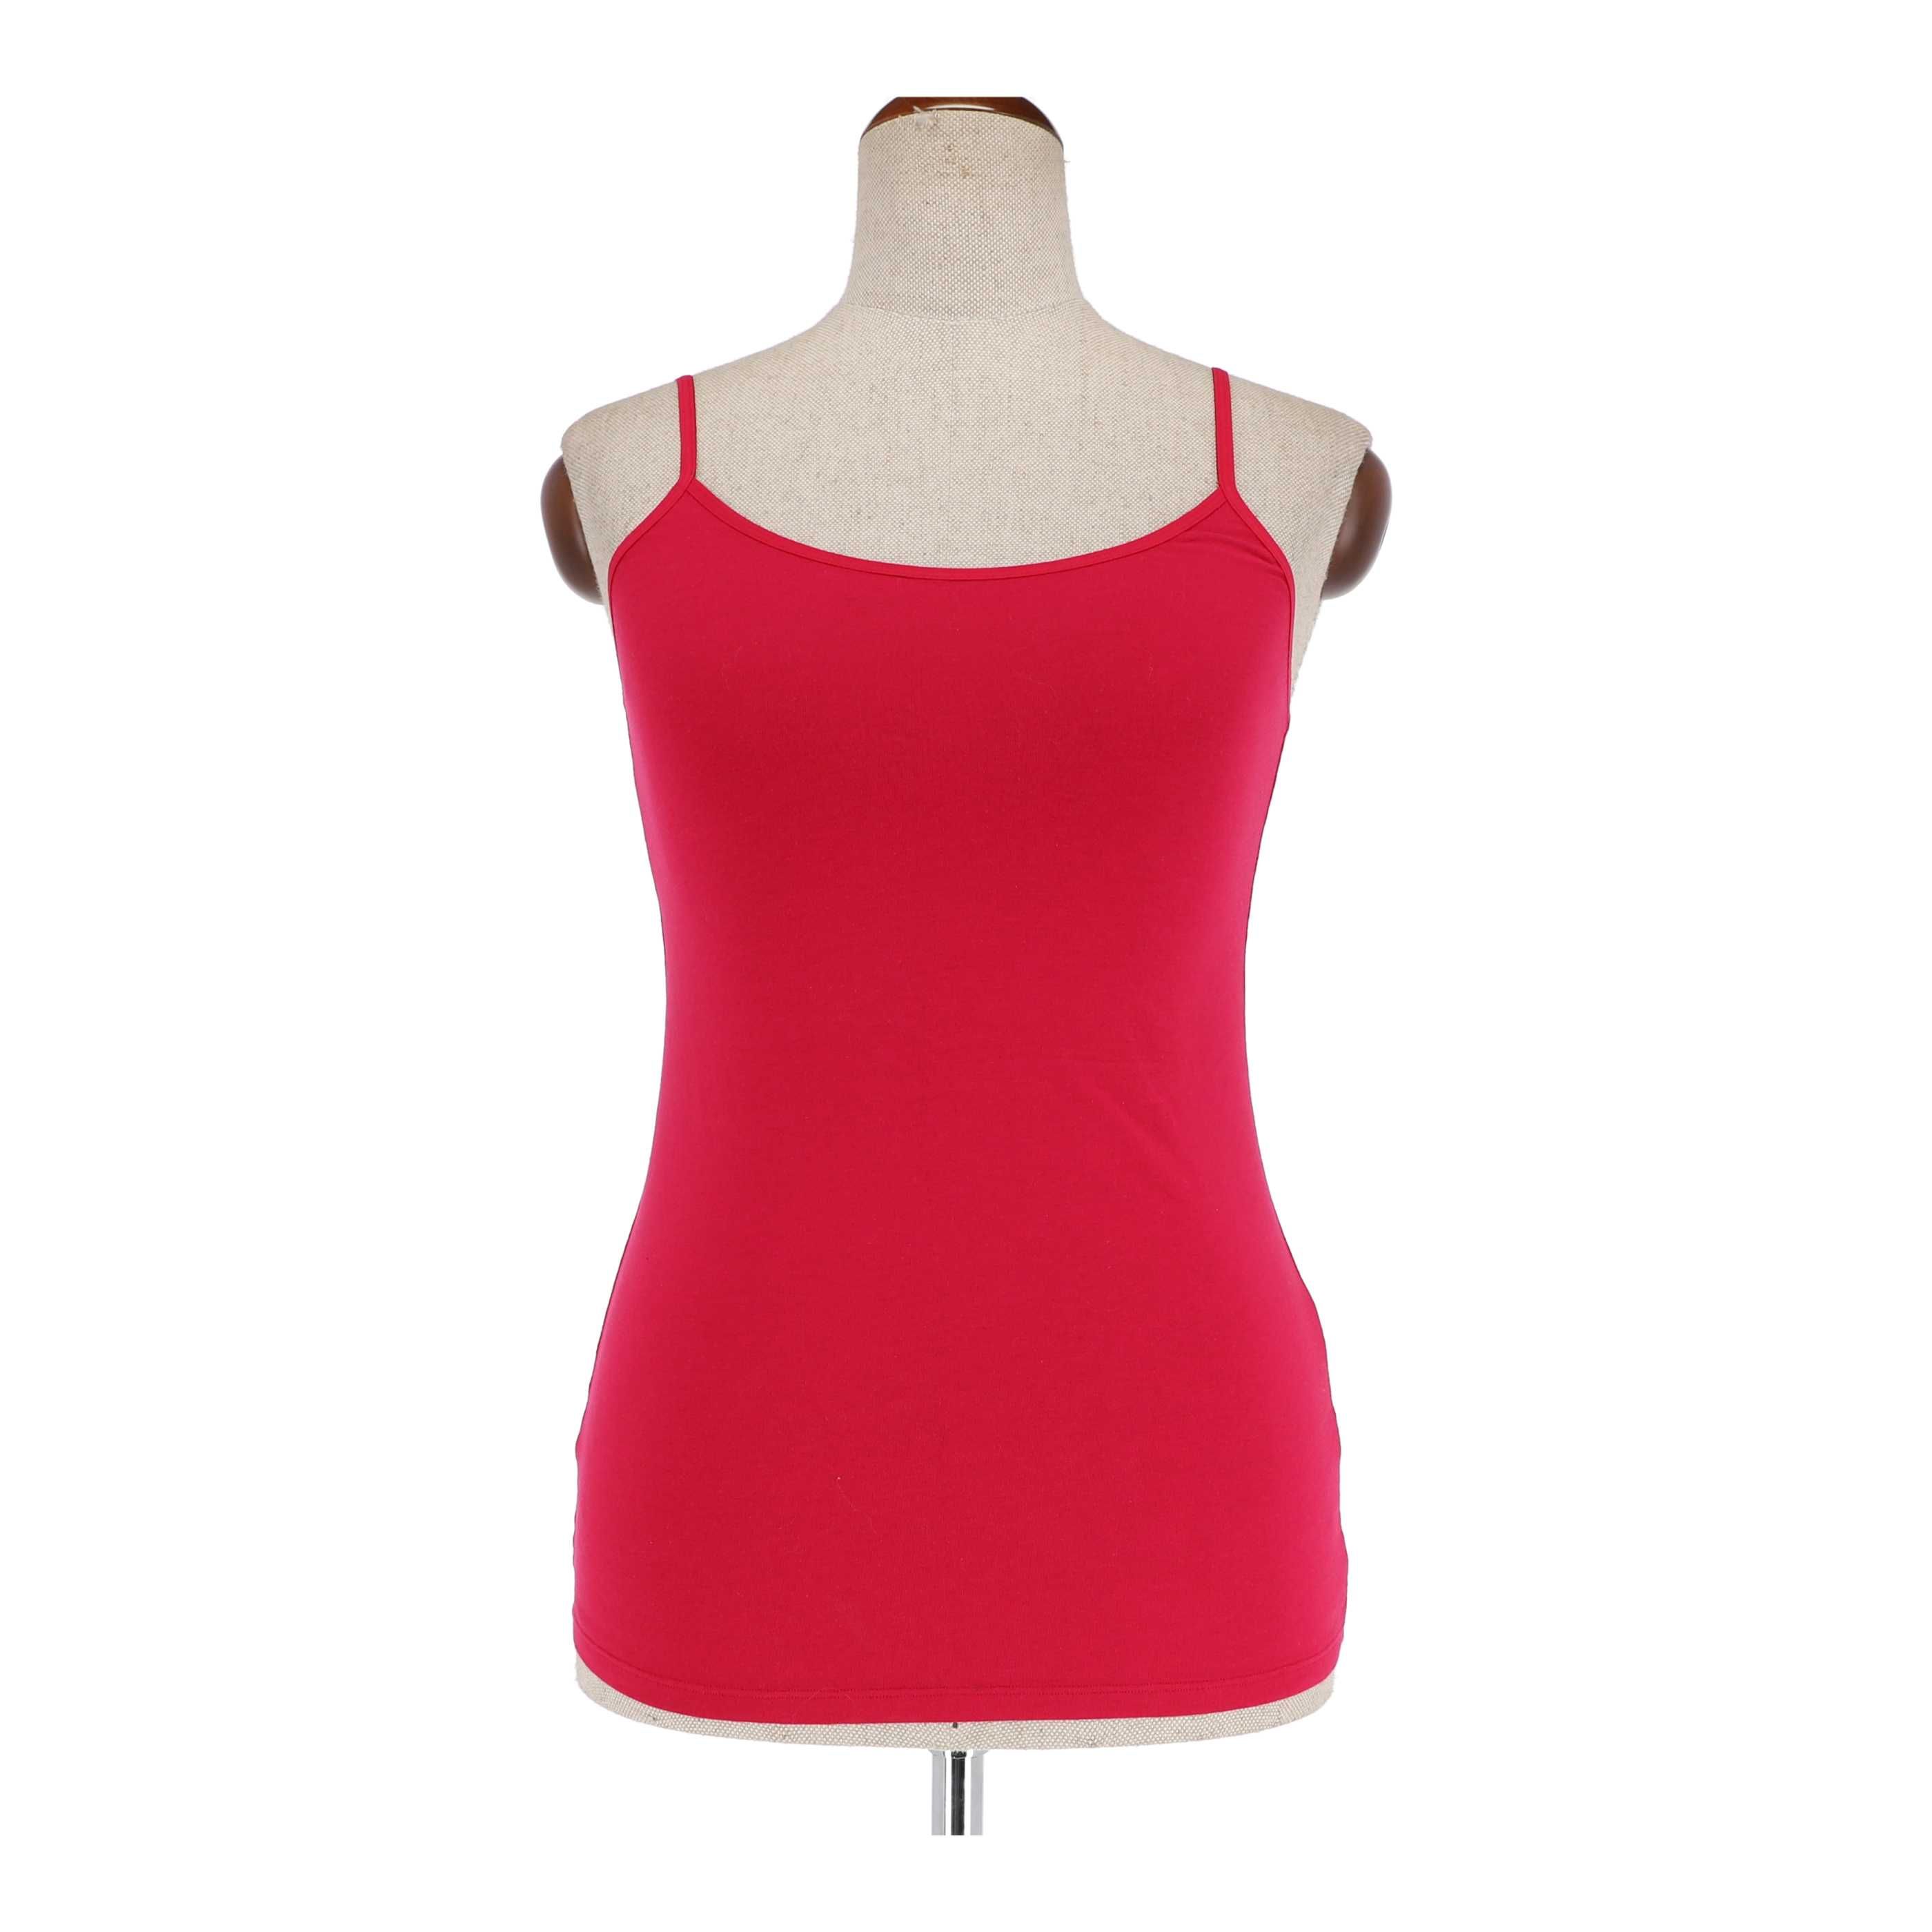 Różowa bluzka marki Felina Lingerie, rozmiar 38